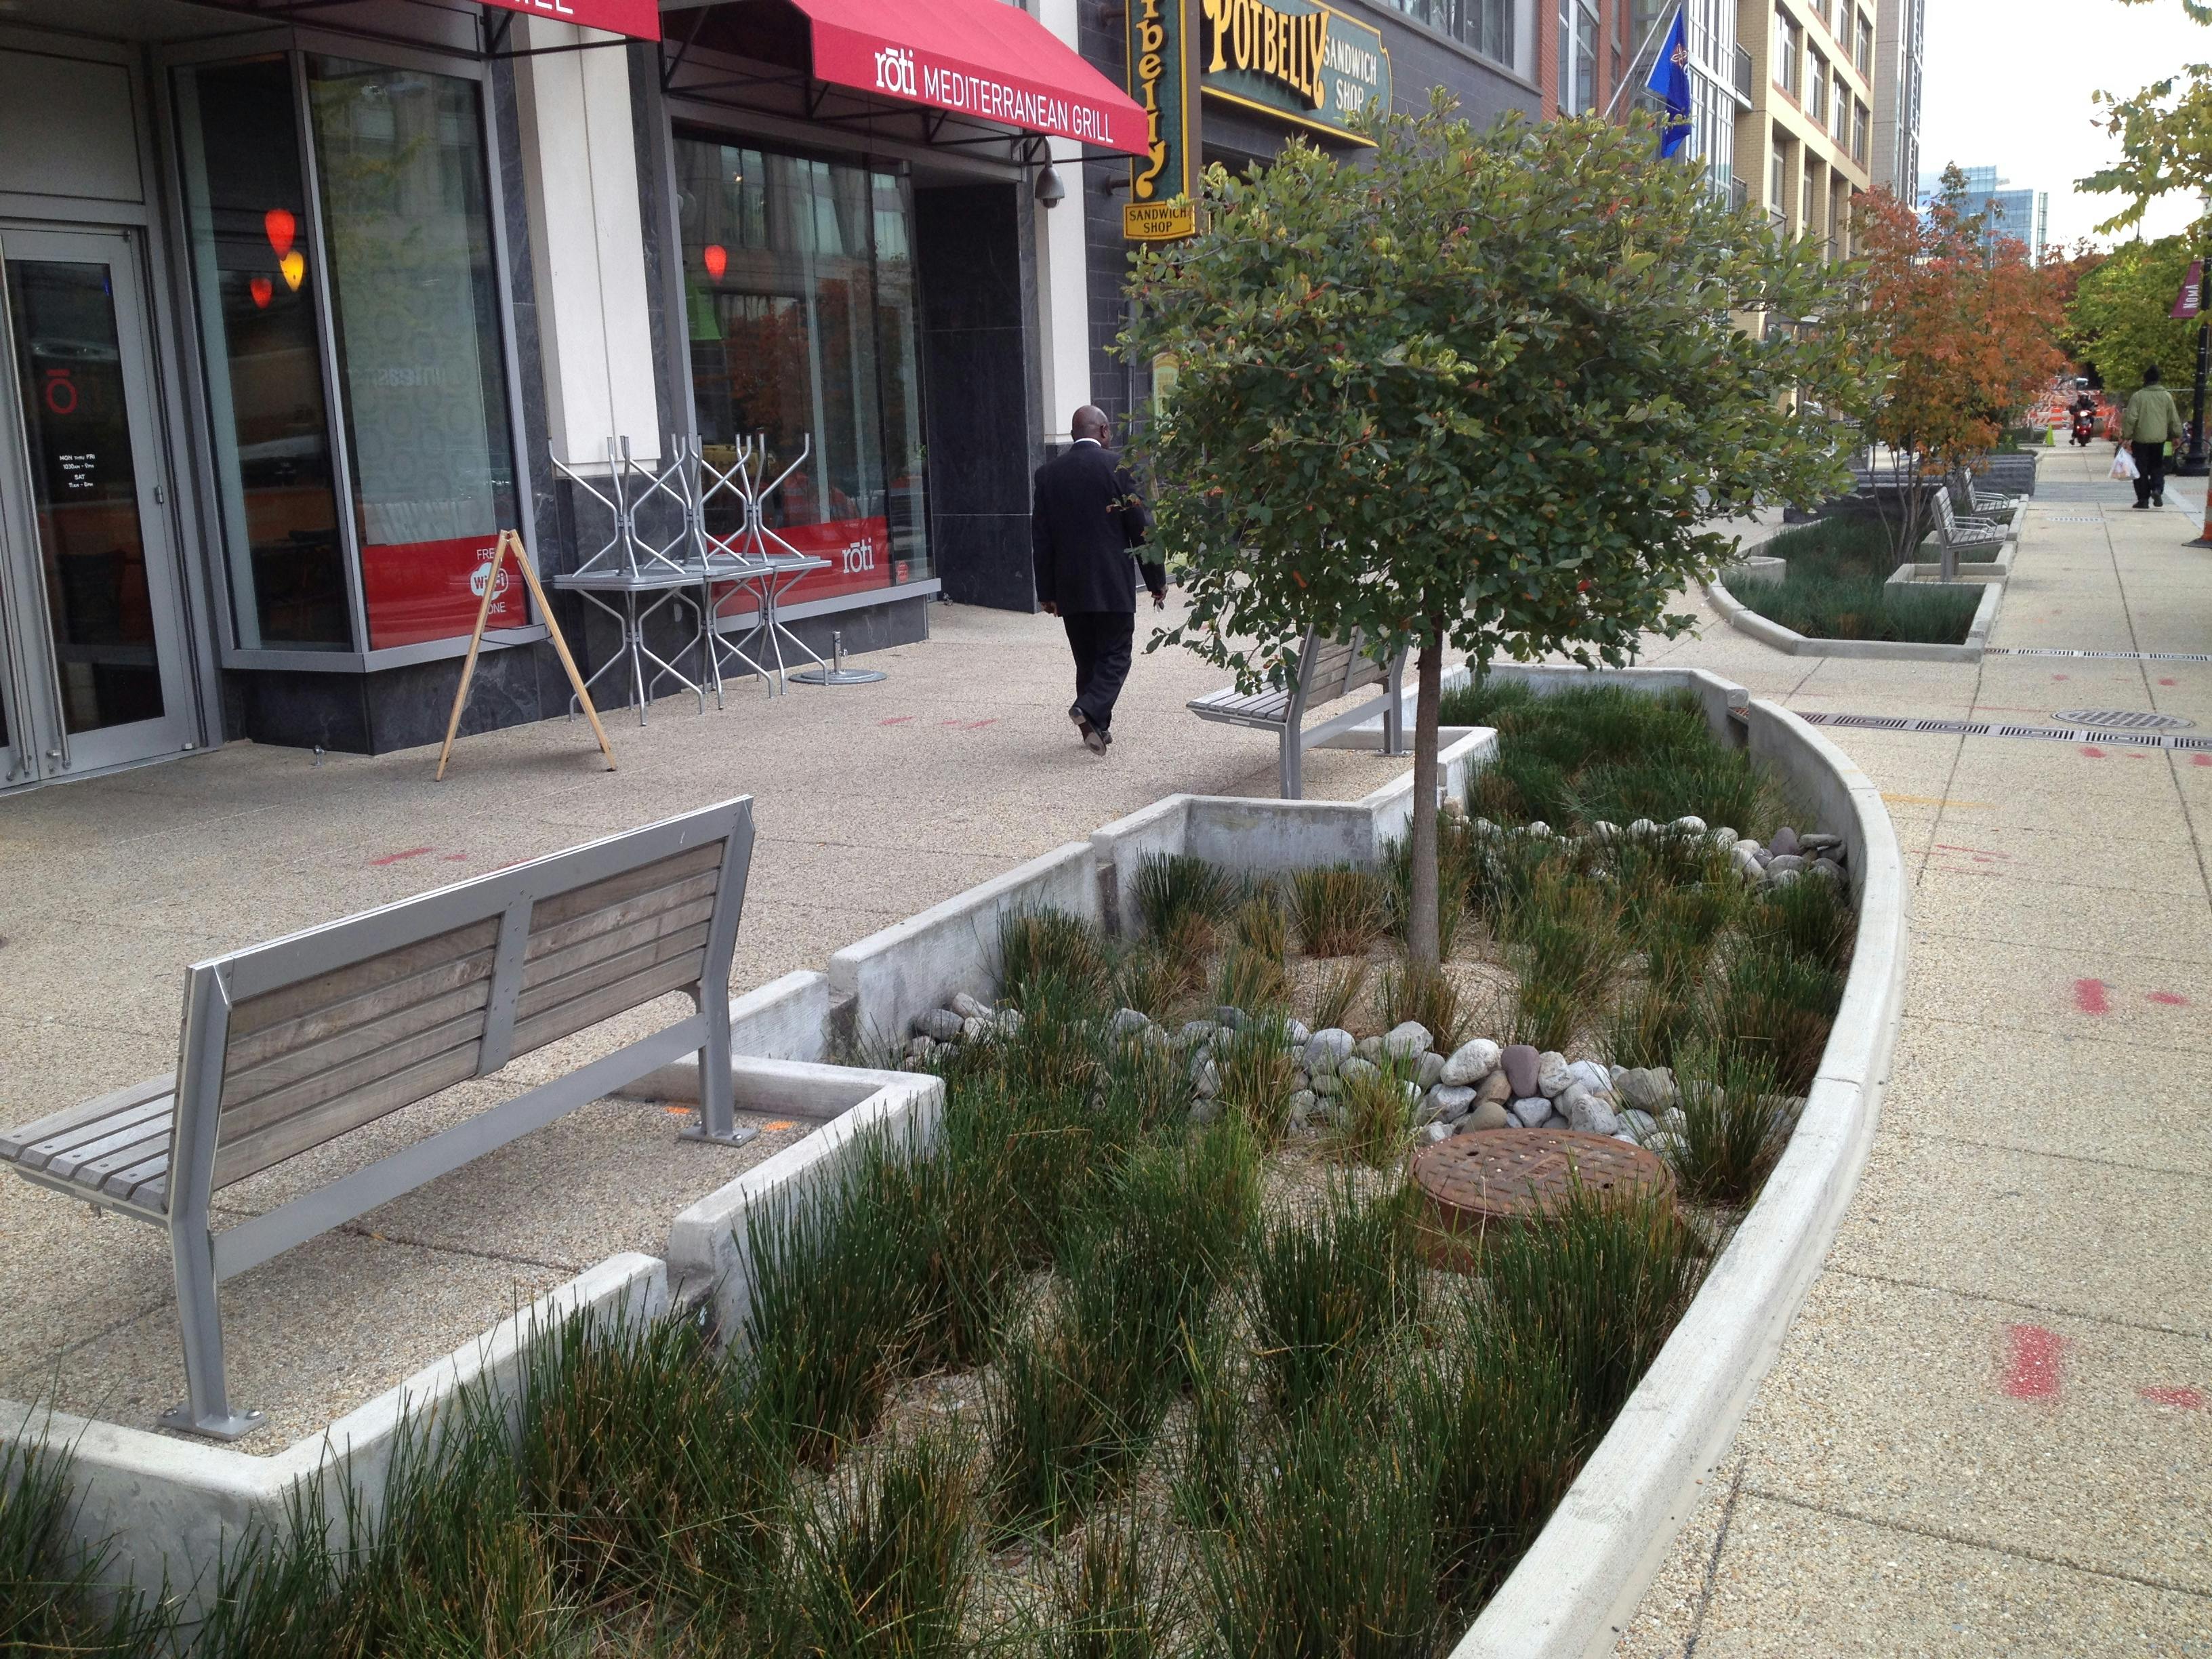 Bioretention garden on a sidewalk